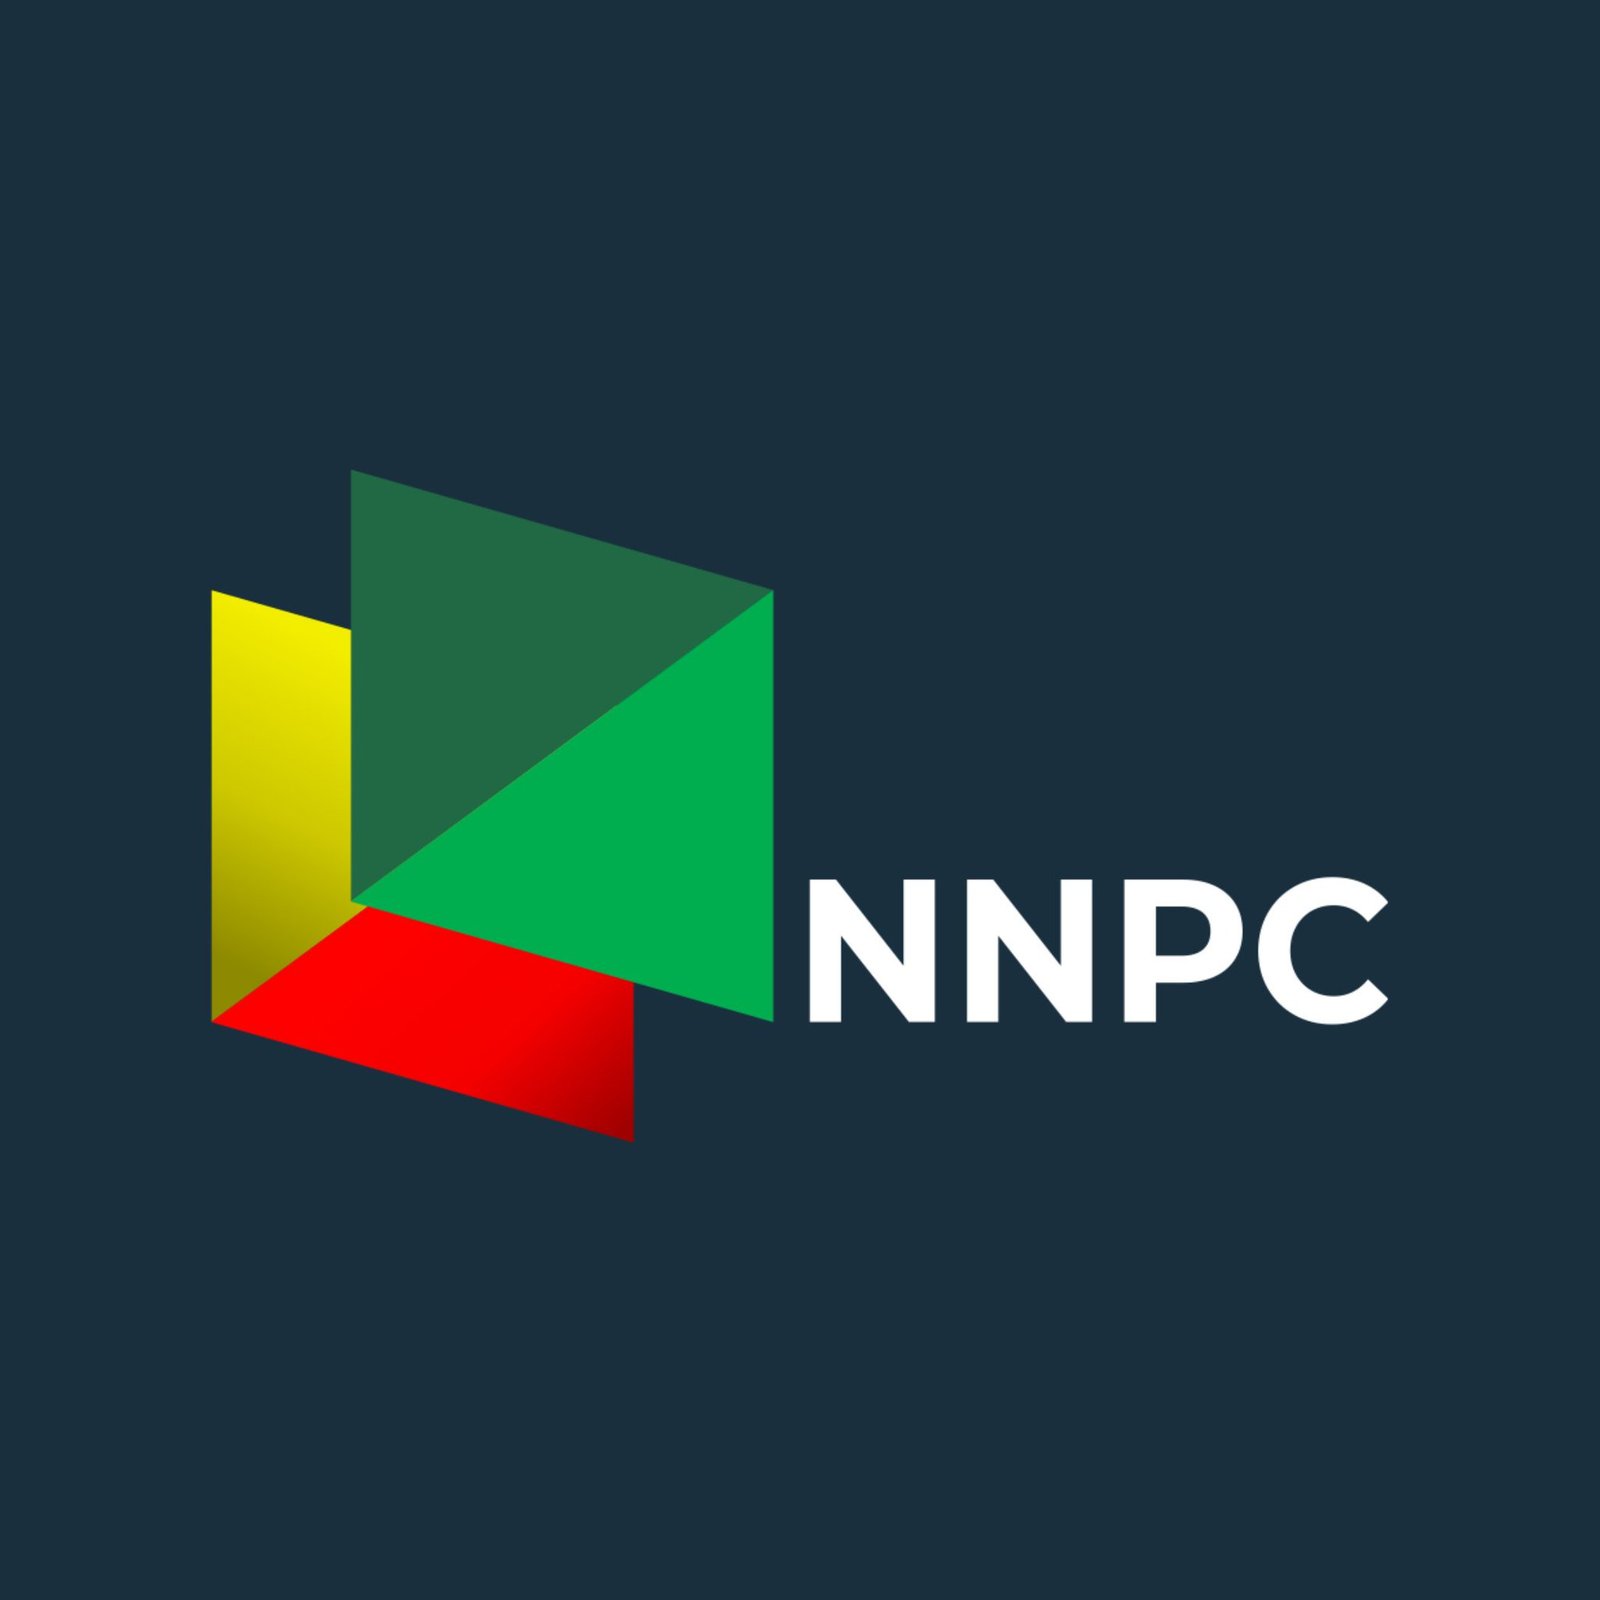 NNPC E&P Ltd, NOSL Hit First Oil in OML 13, Akwa Ibom State